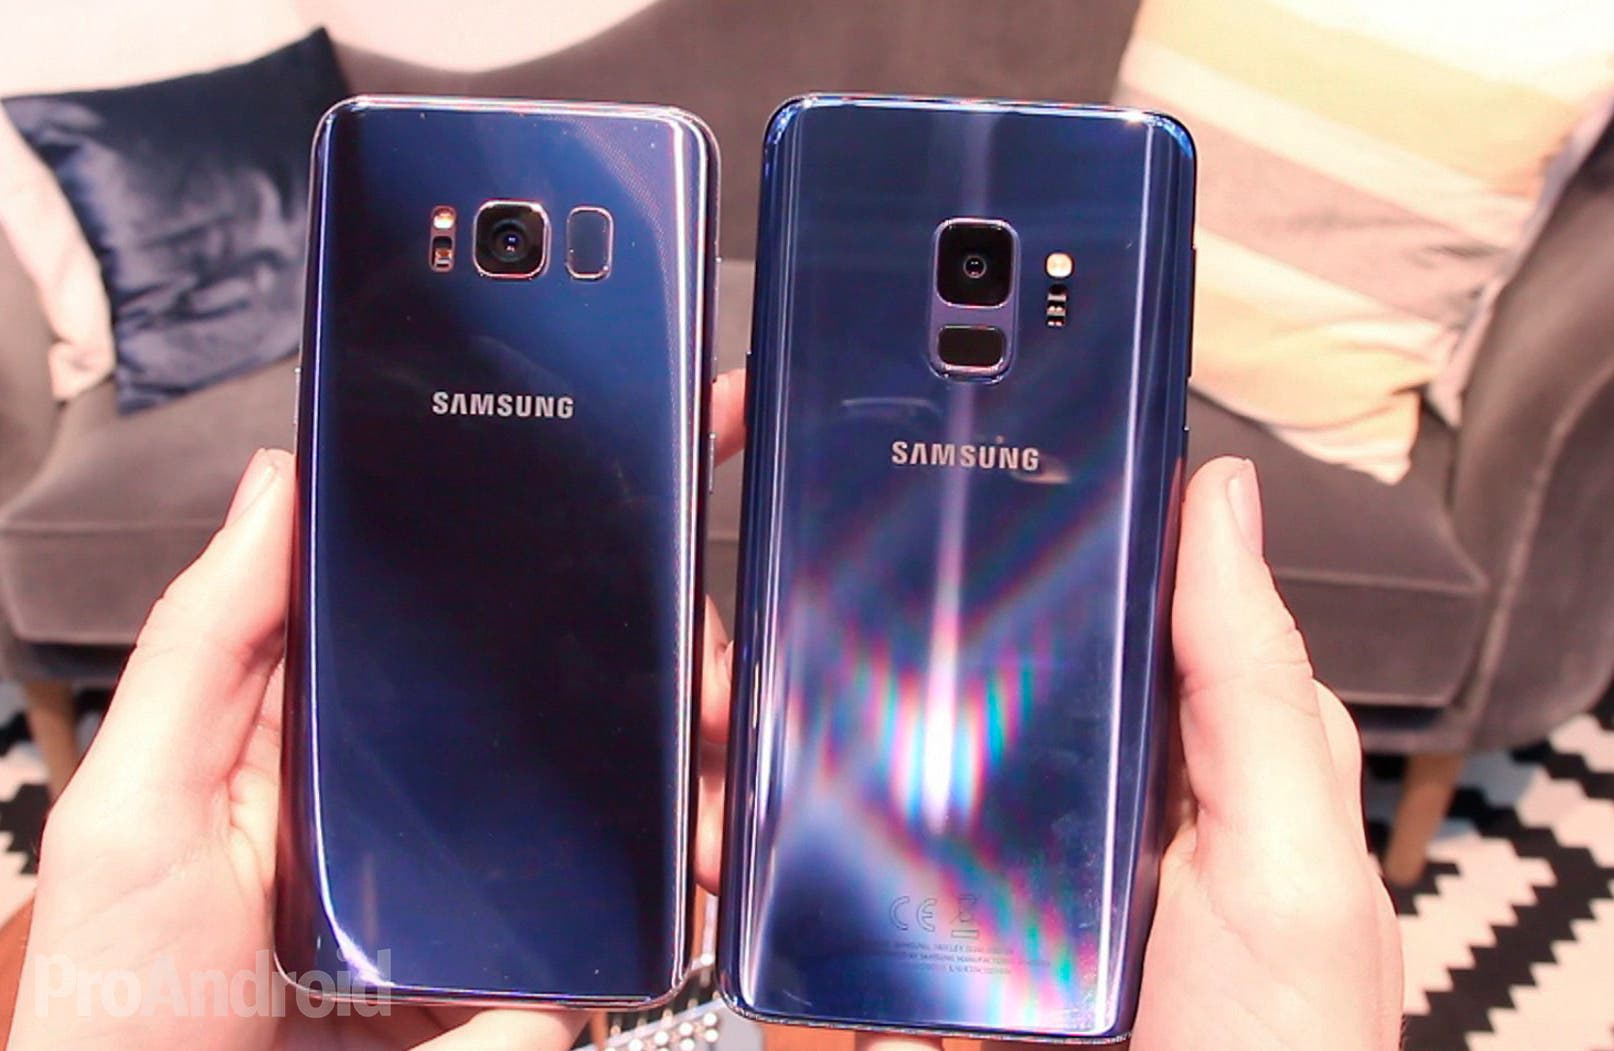 Samsung Galaxy S9 Vs Samsung Galaxy S8 Merece La Pena El Cambio